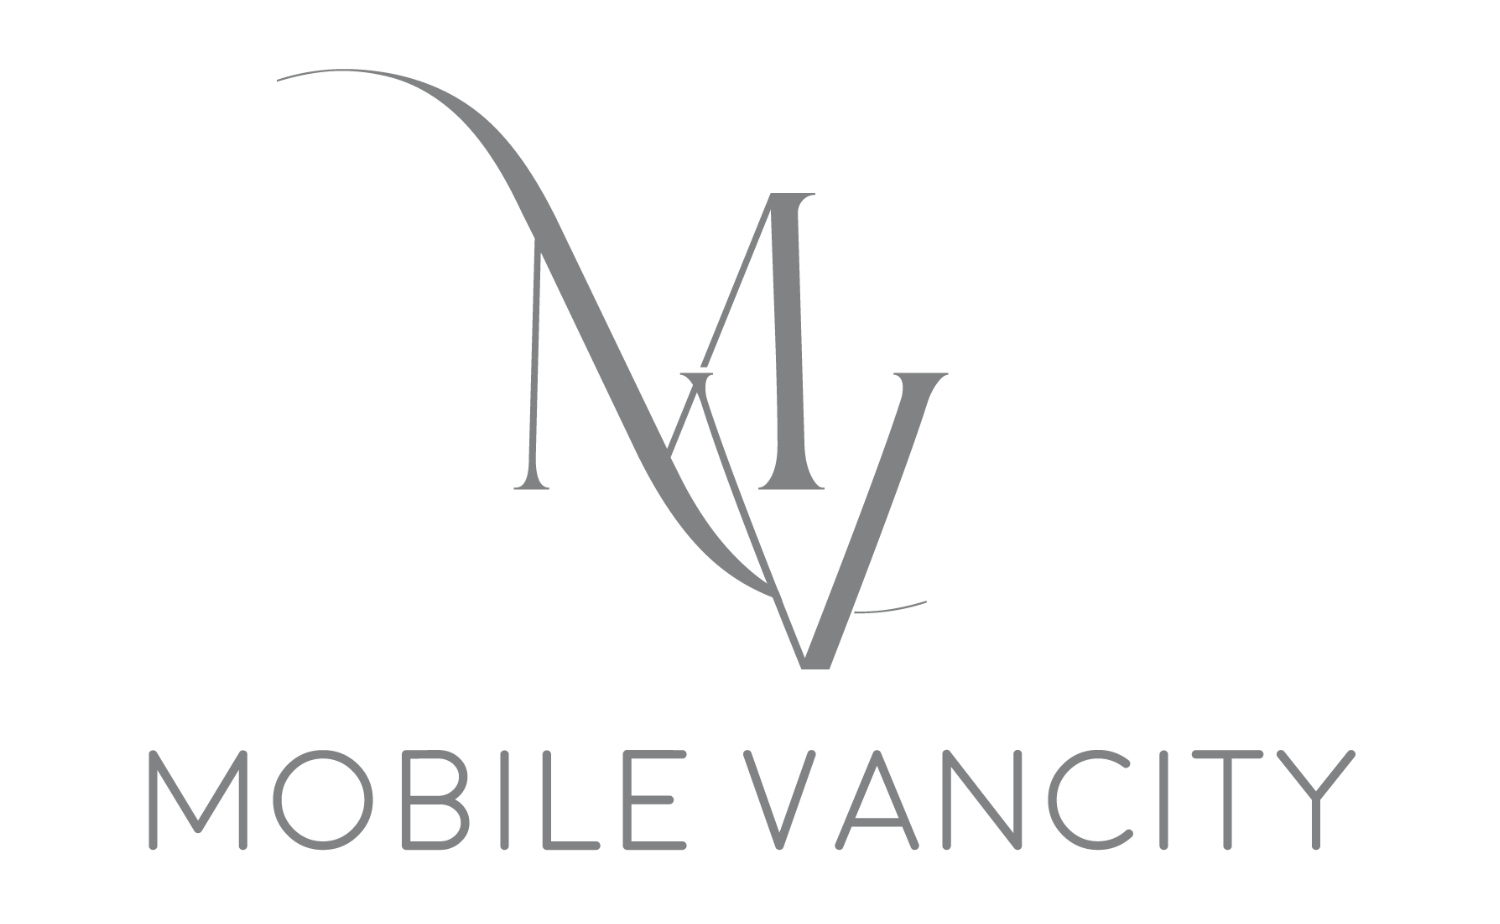 Mobile Vancity